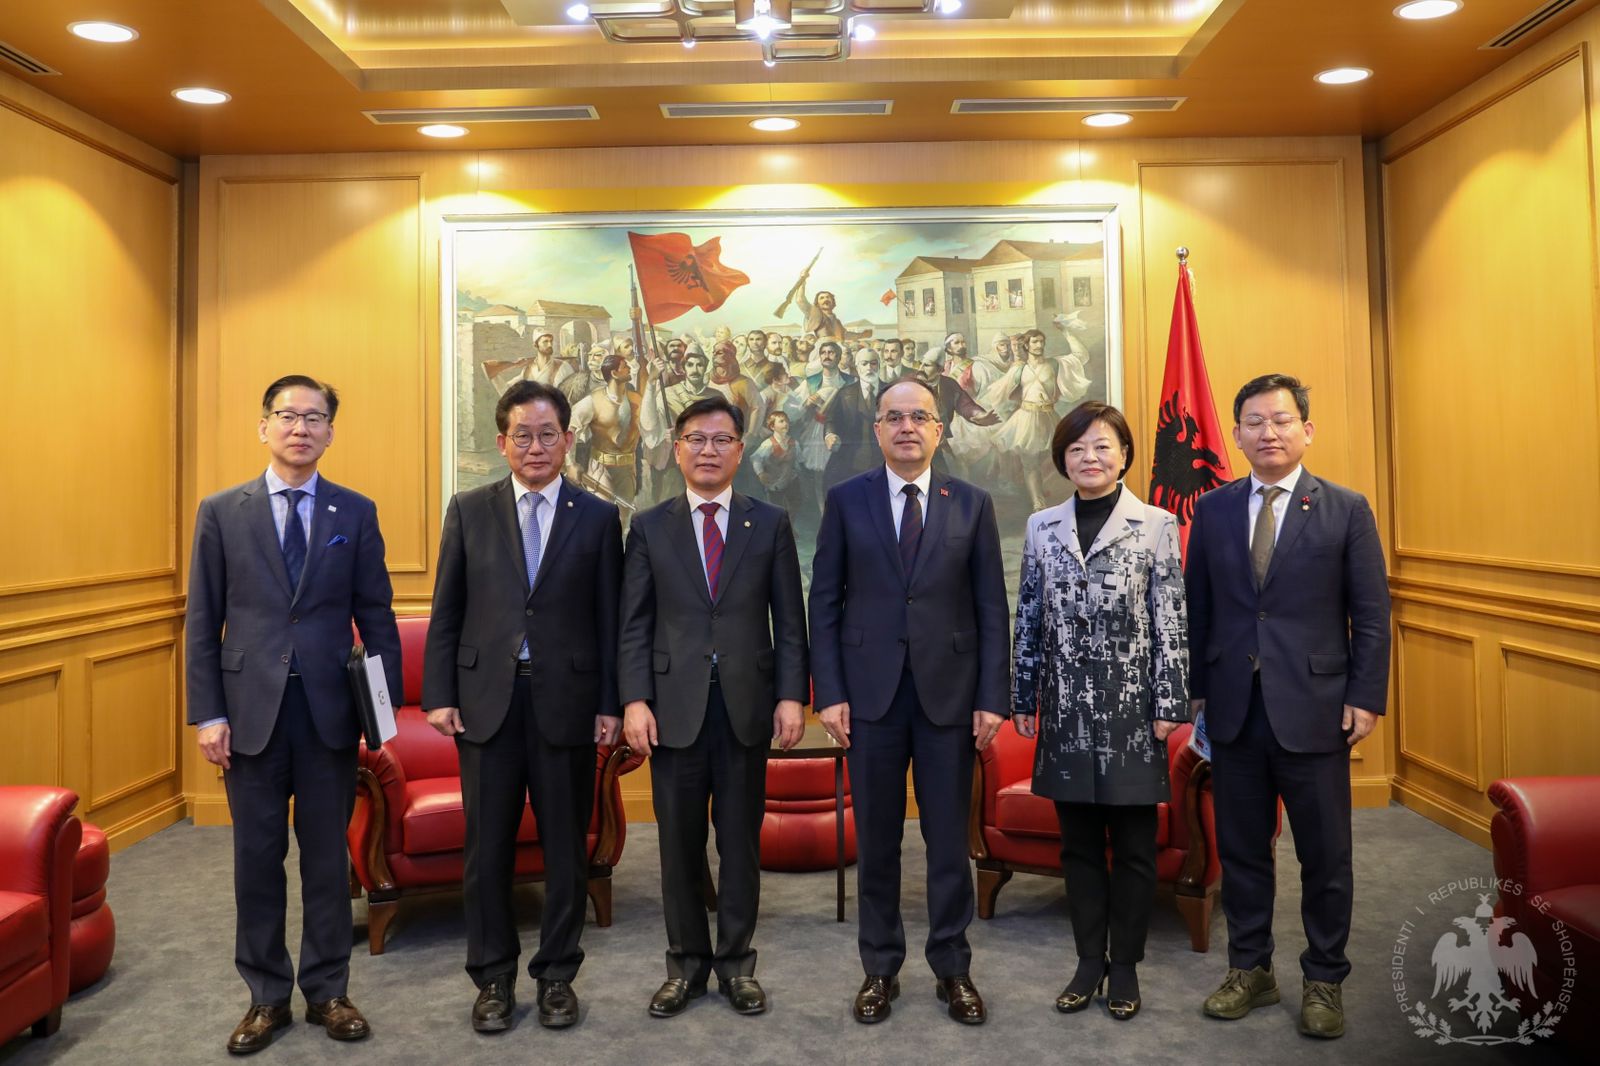 Presidenti Begaj pret delegacionin e grupit të miqësisë të Koresë së Jugut: Mirënjohje për mbështetjen e dhënë ndaj Kosovës